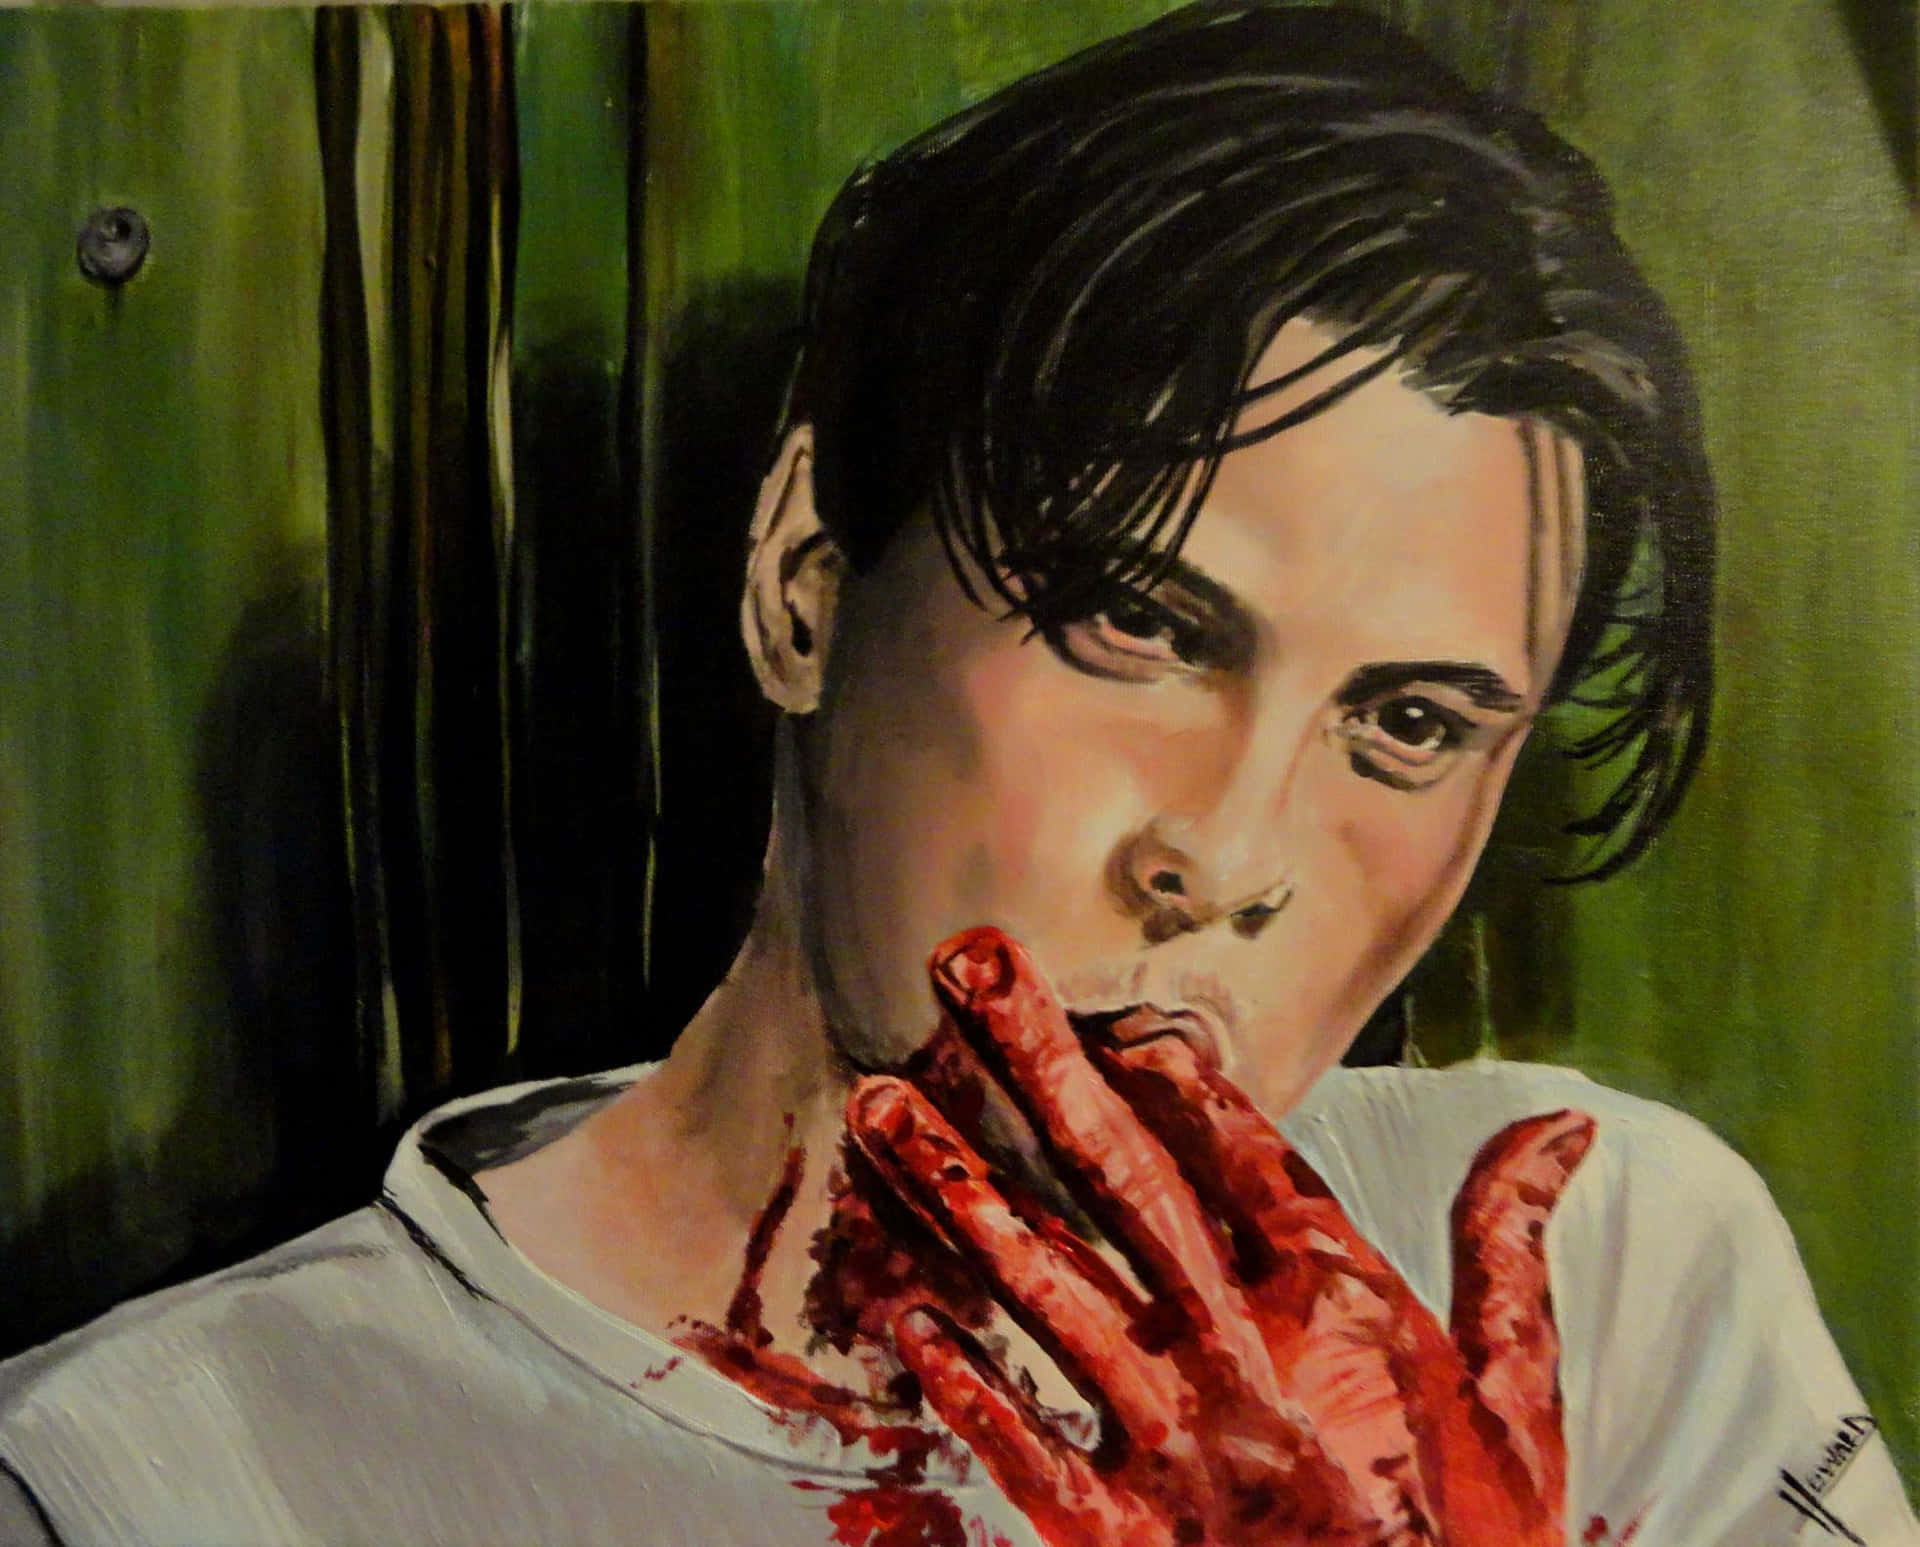 Enmålning Av En Man Med Blod På Sina Händer